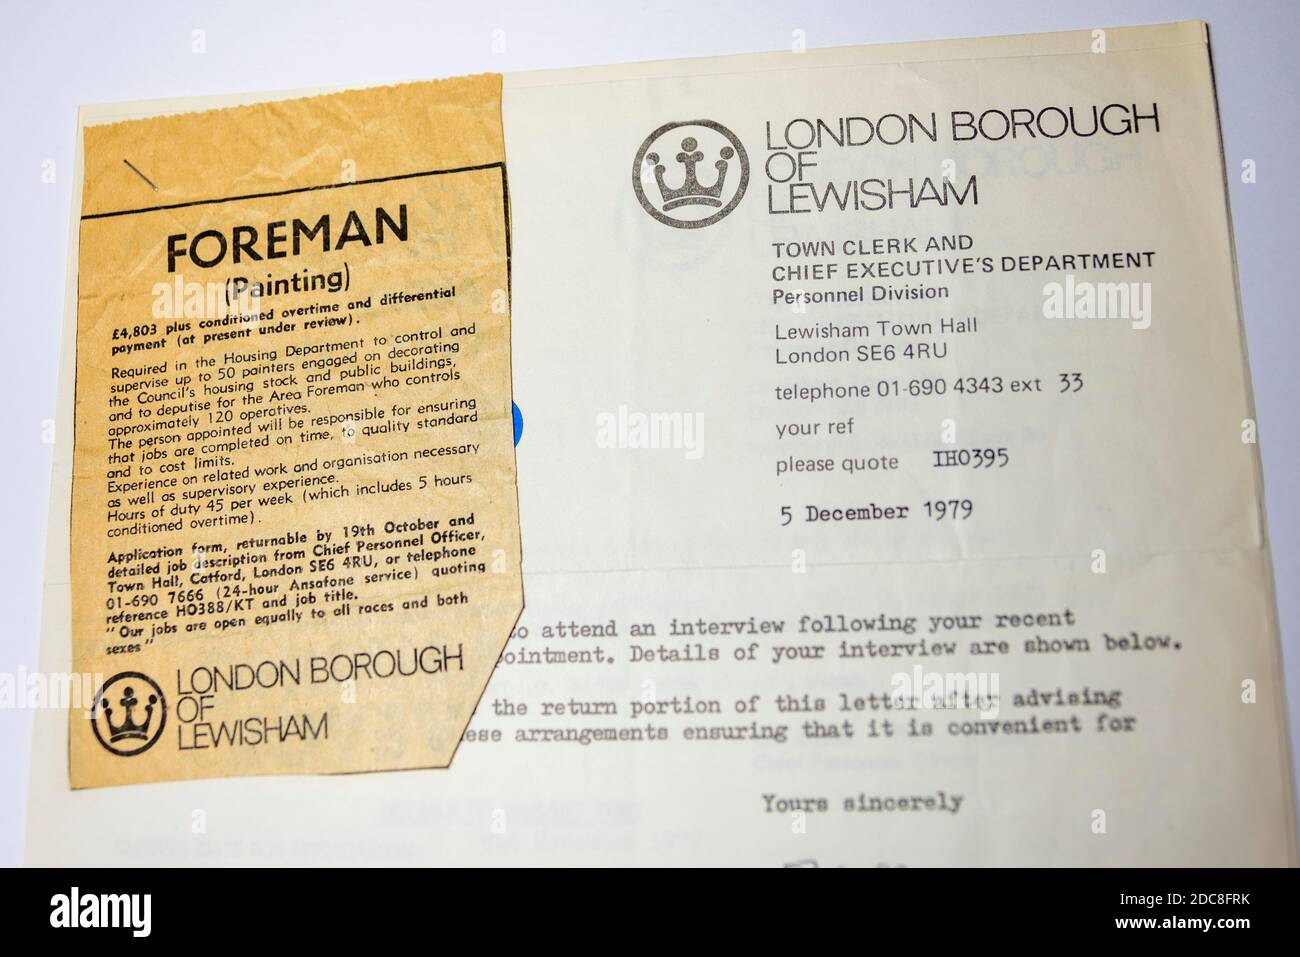 Vintage-Papiere. London Borough of Lewisham, Details zur freien Verfügung. Stellenbeschreibung für Vorarbeiter, Maler, mit Zeitung Stellenanzeige ausgeschnitten Stockfoto